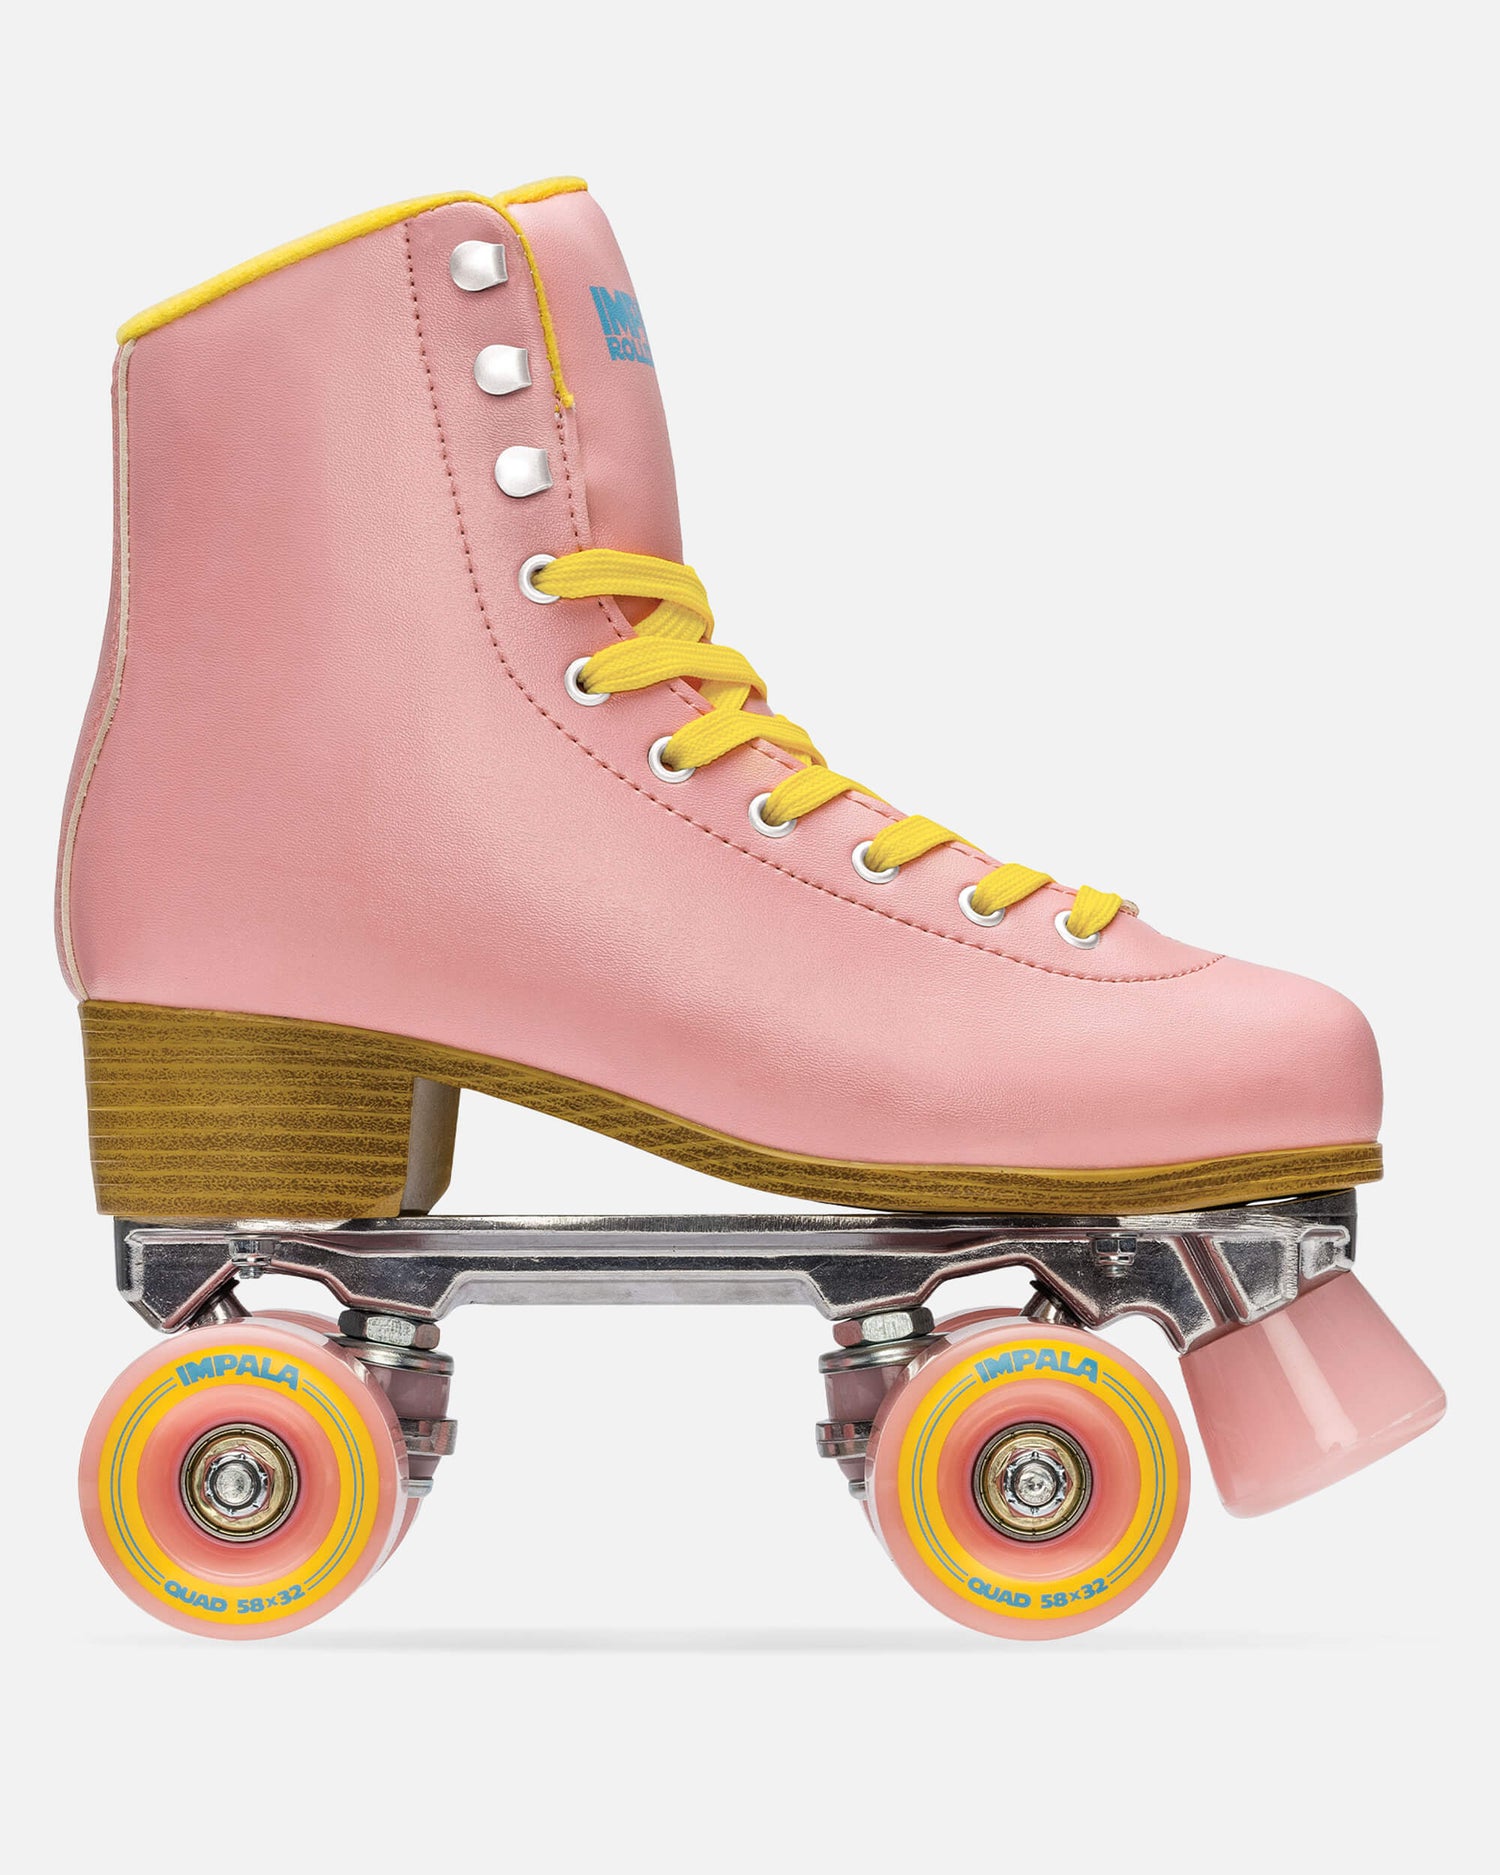 Ga naar het circuit Neuropathie Afscheiden Rolschaatsen - Pink / Geel - Impala Skate Europa